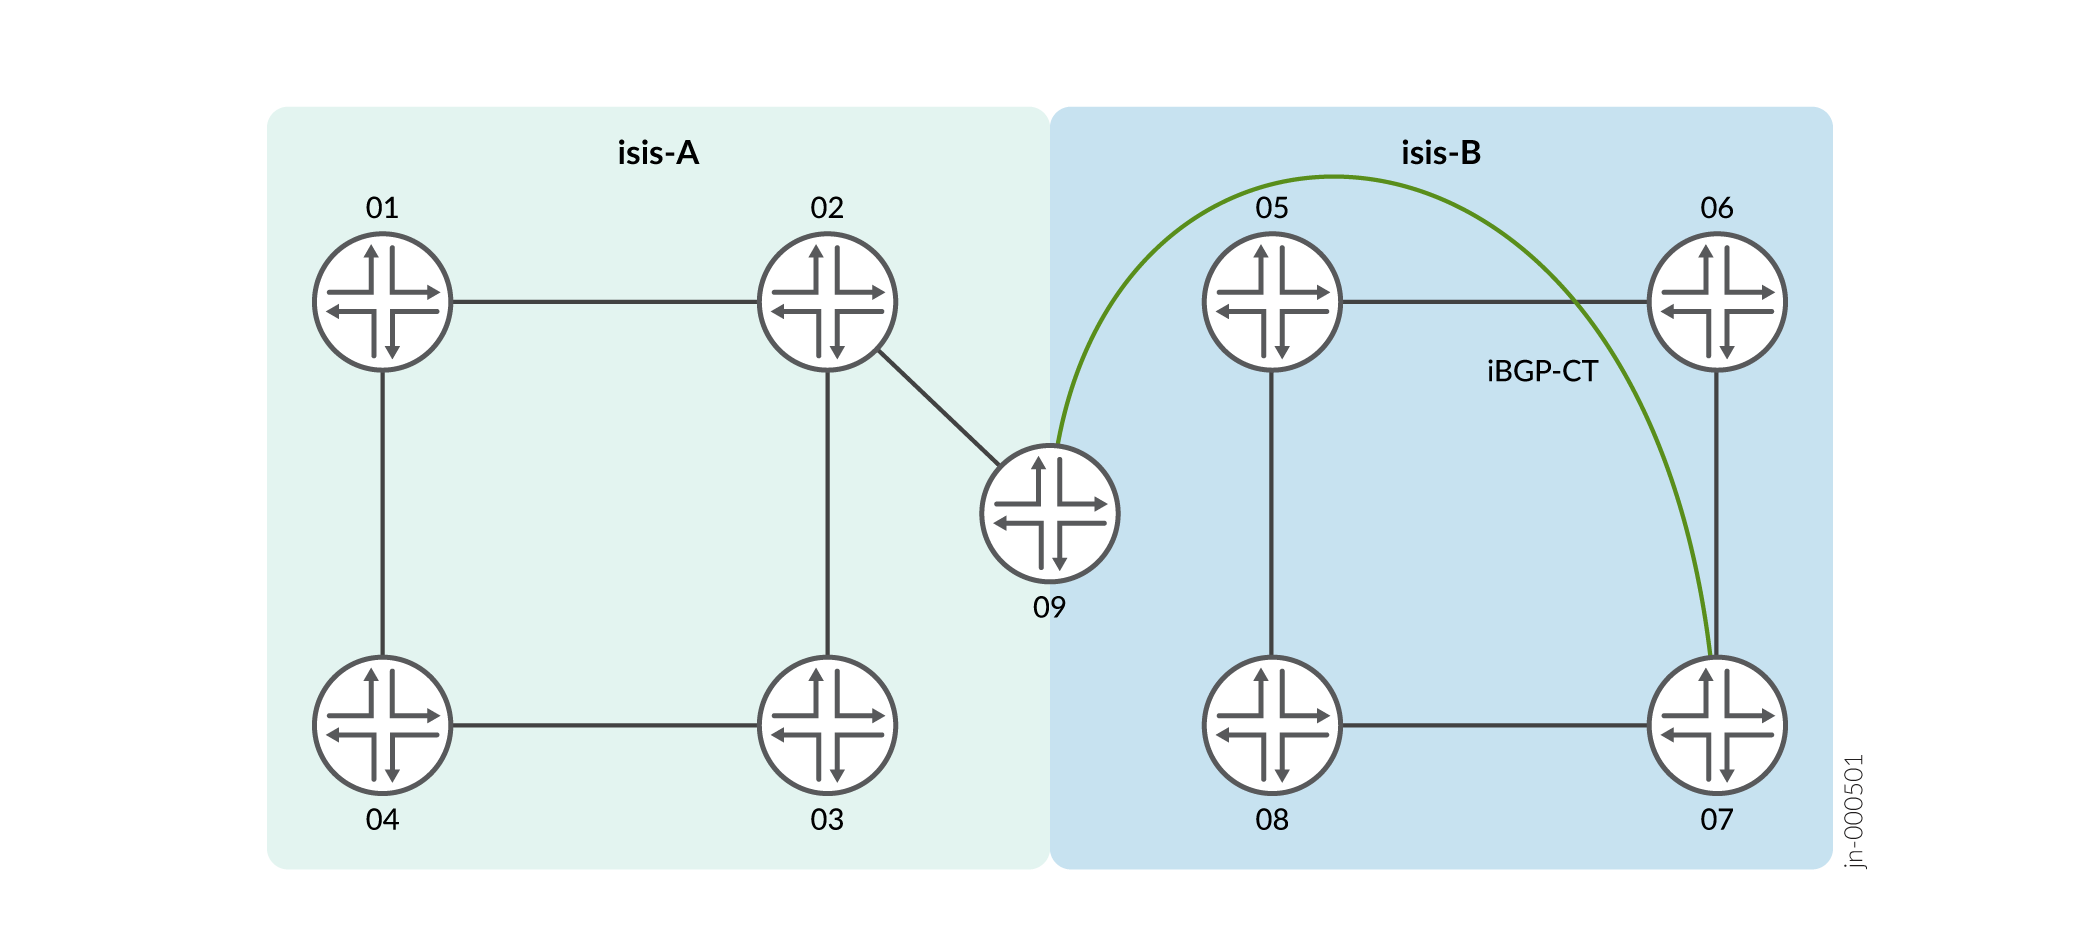 BGP-CT – Flexible Algorithm Leaking